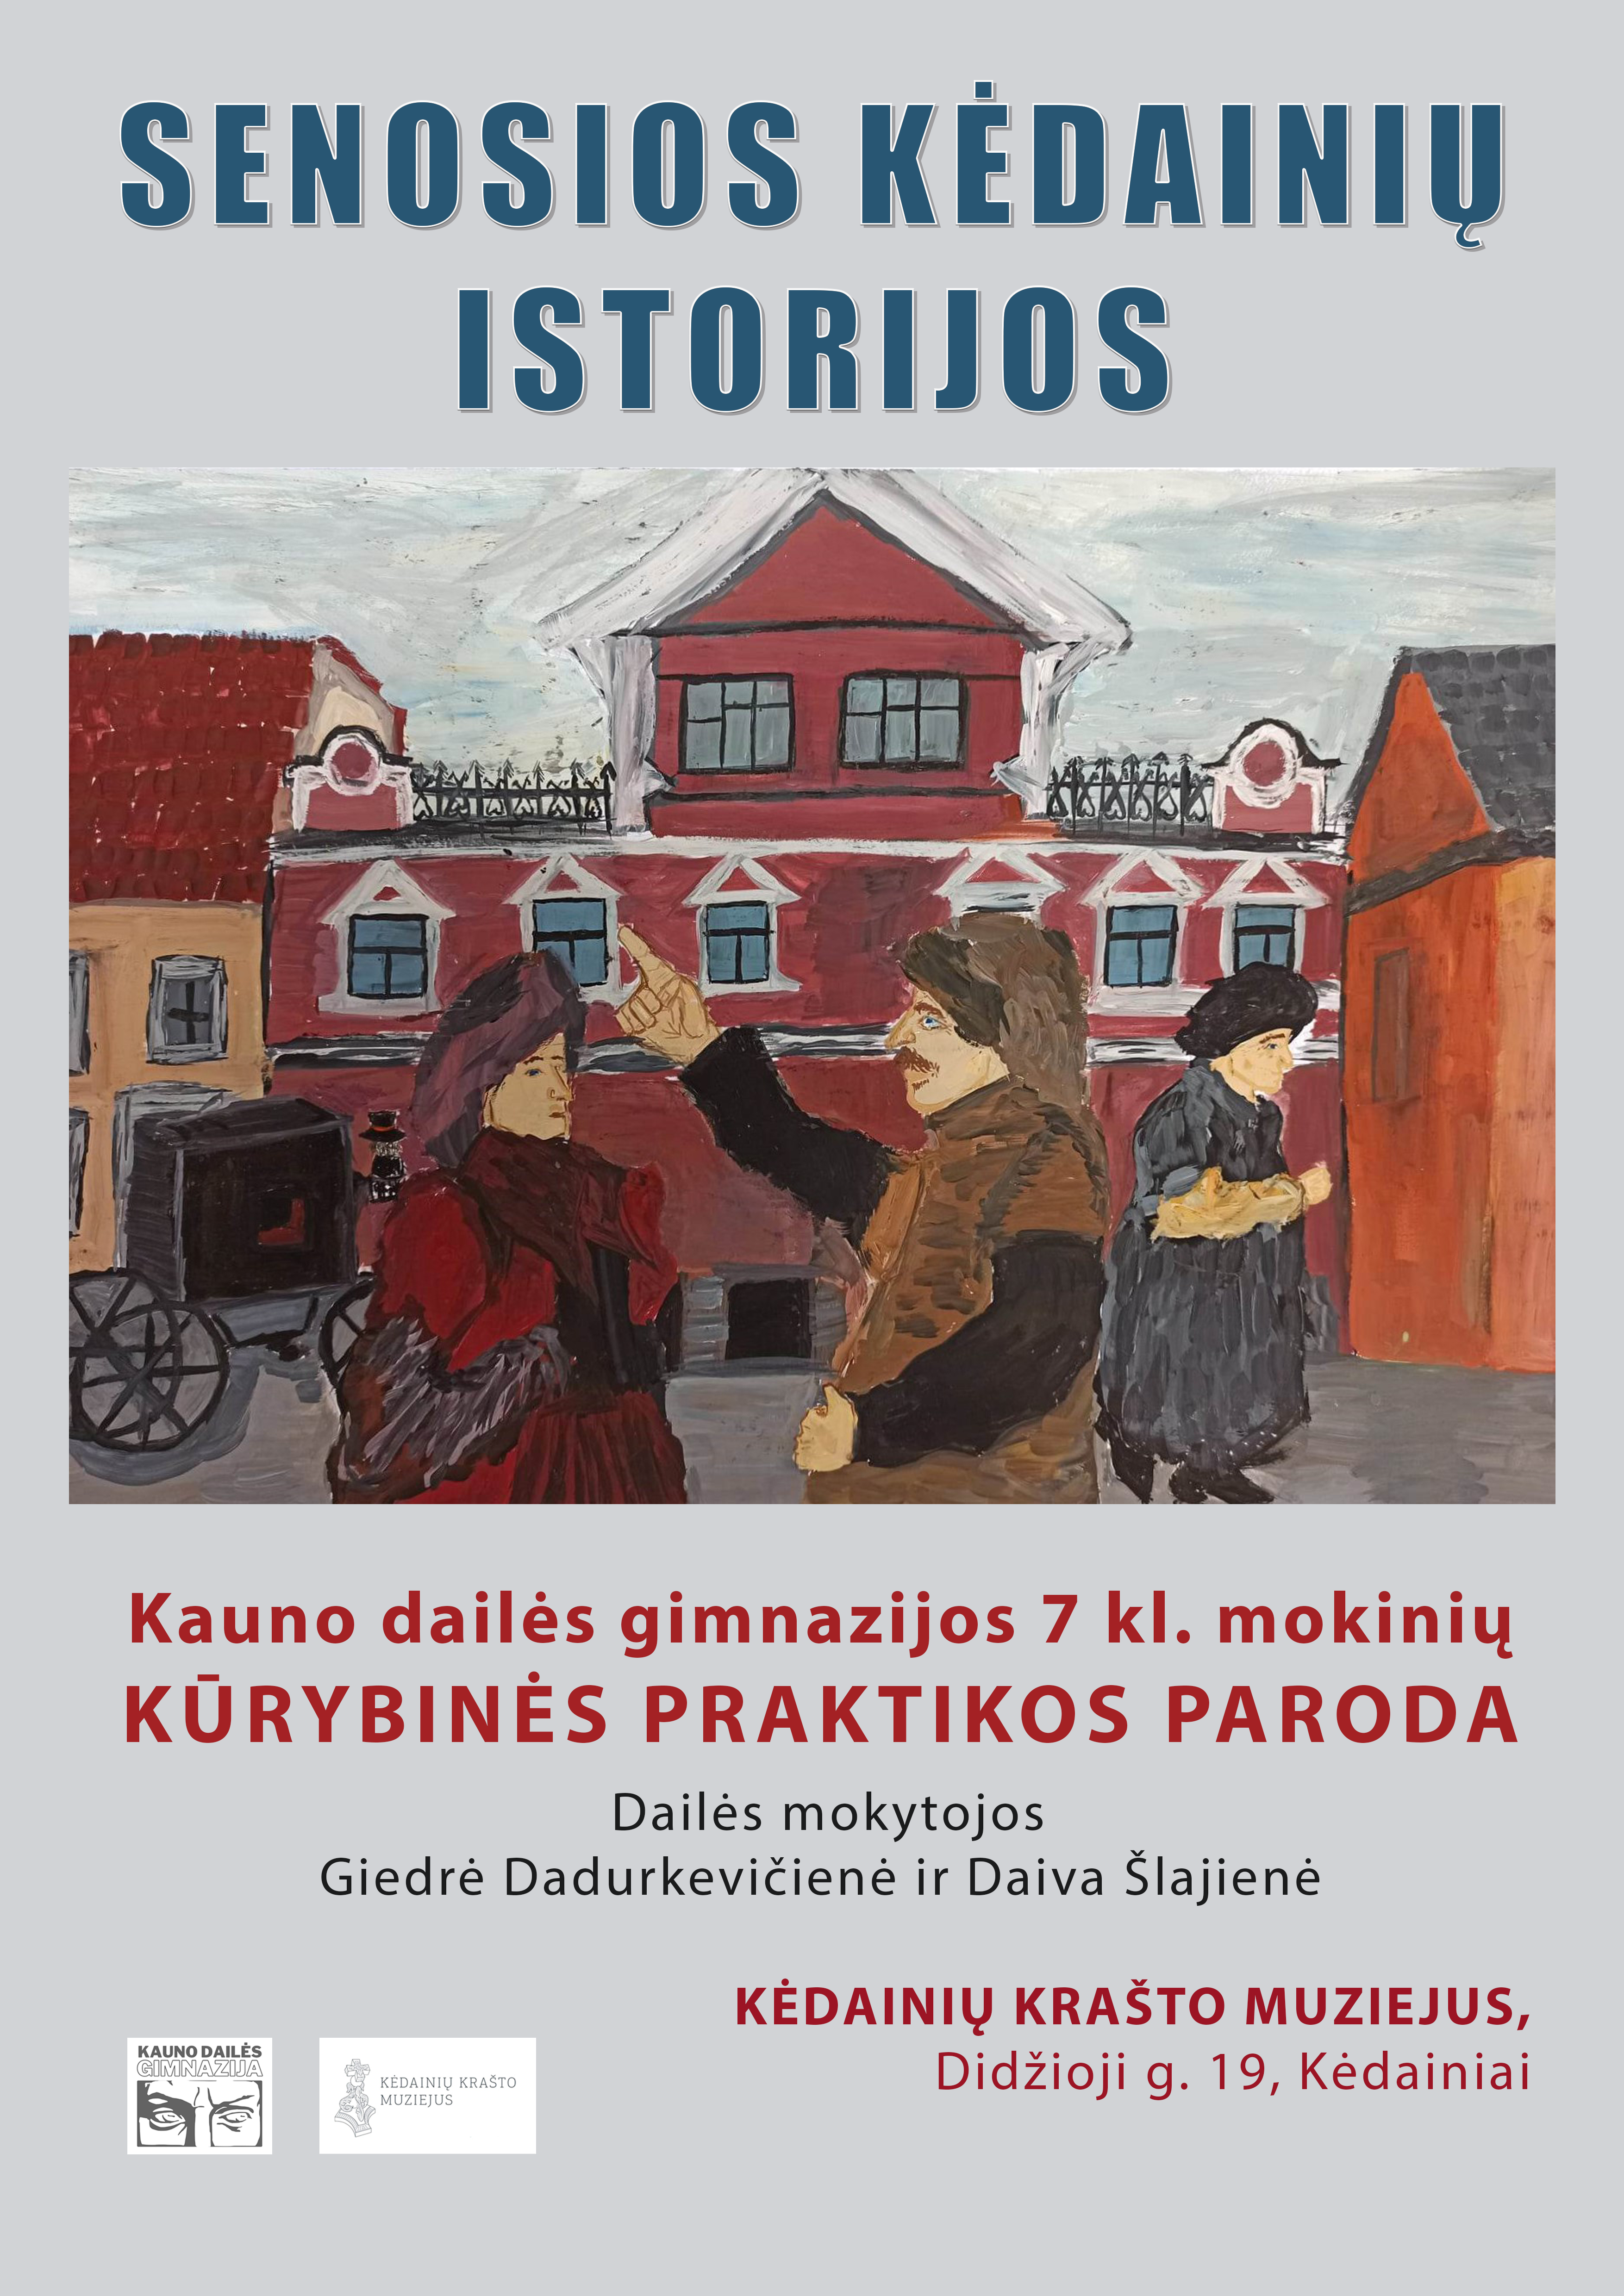 Kauno dailės gimnazijos 7 kl. mokinių kūrybinės praktikos paroda „Senosios Kėdainių istorijos“